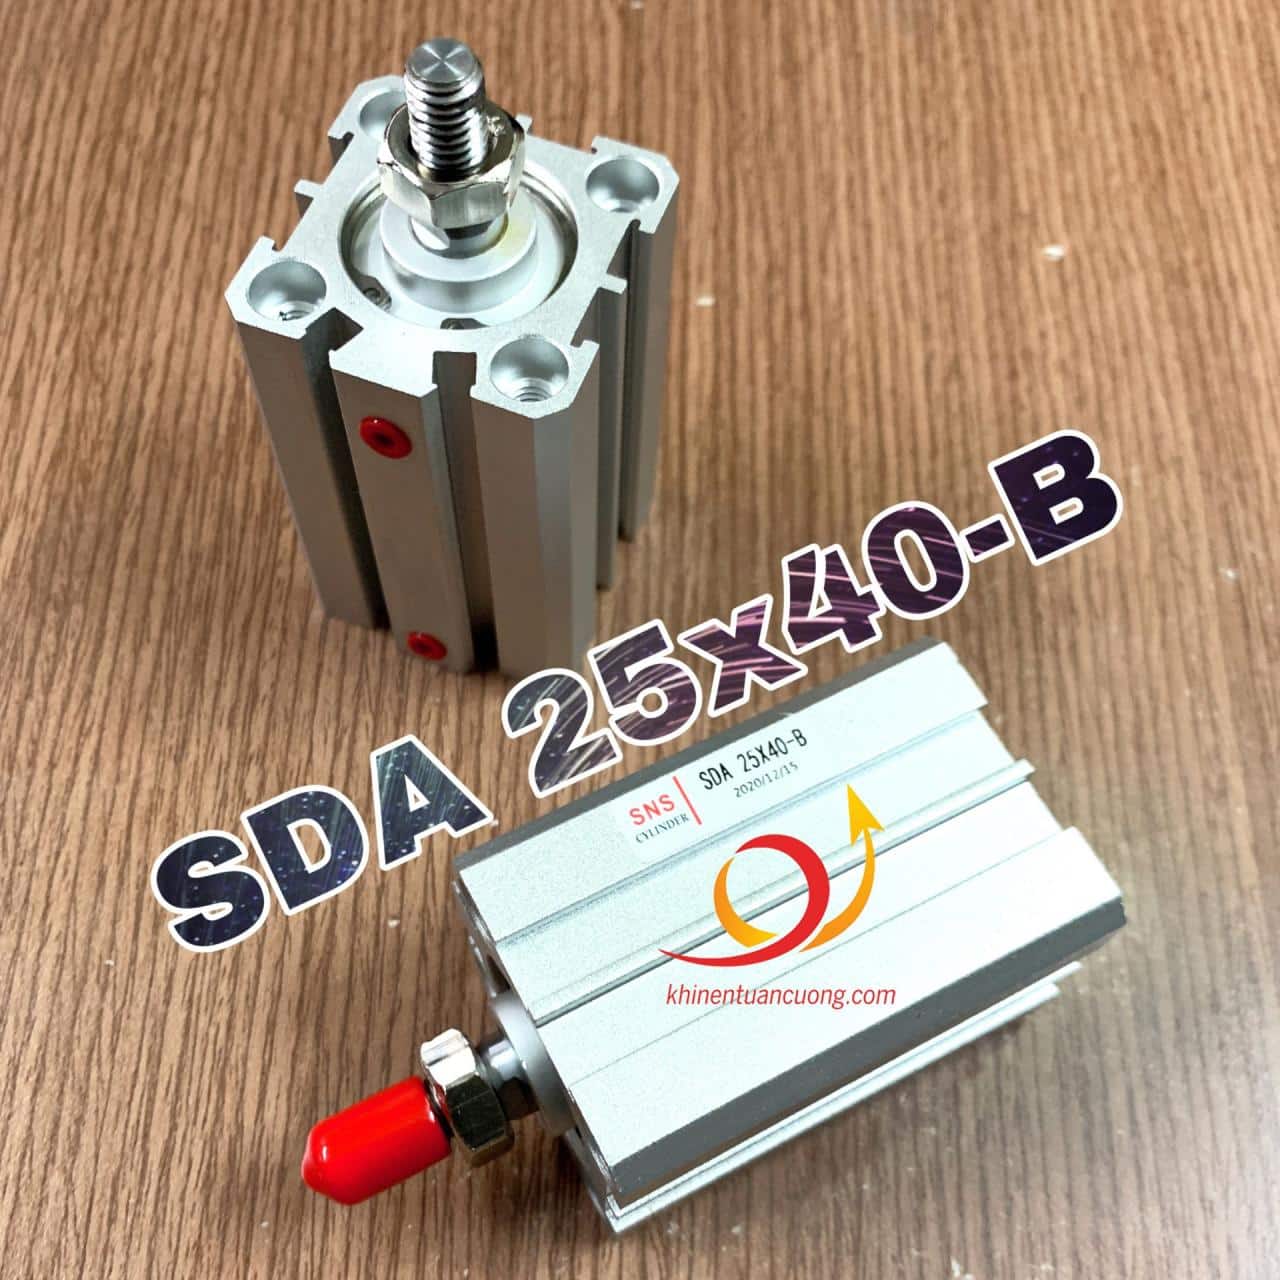 SDA25x40-B là chiếc xylanh khí nén compact ren ngoài, đuôi -B này dùng để phân biệt với loại SDA ren trong